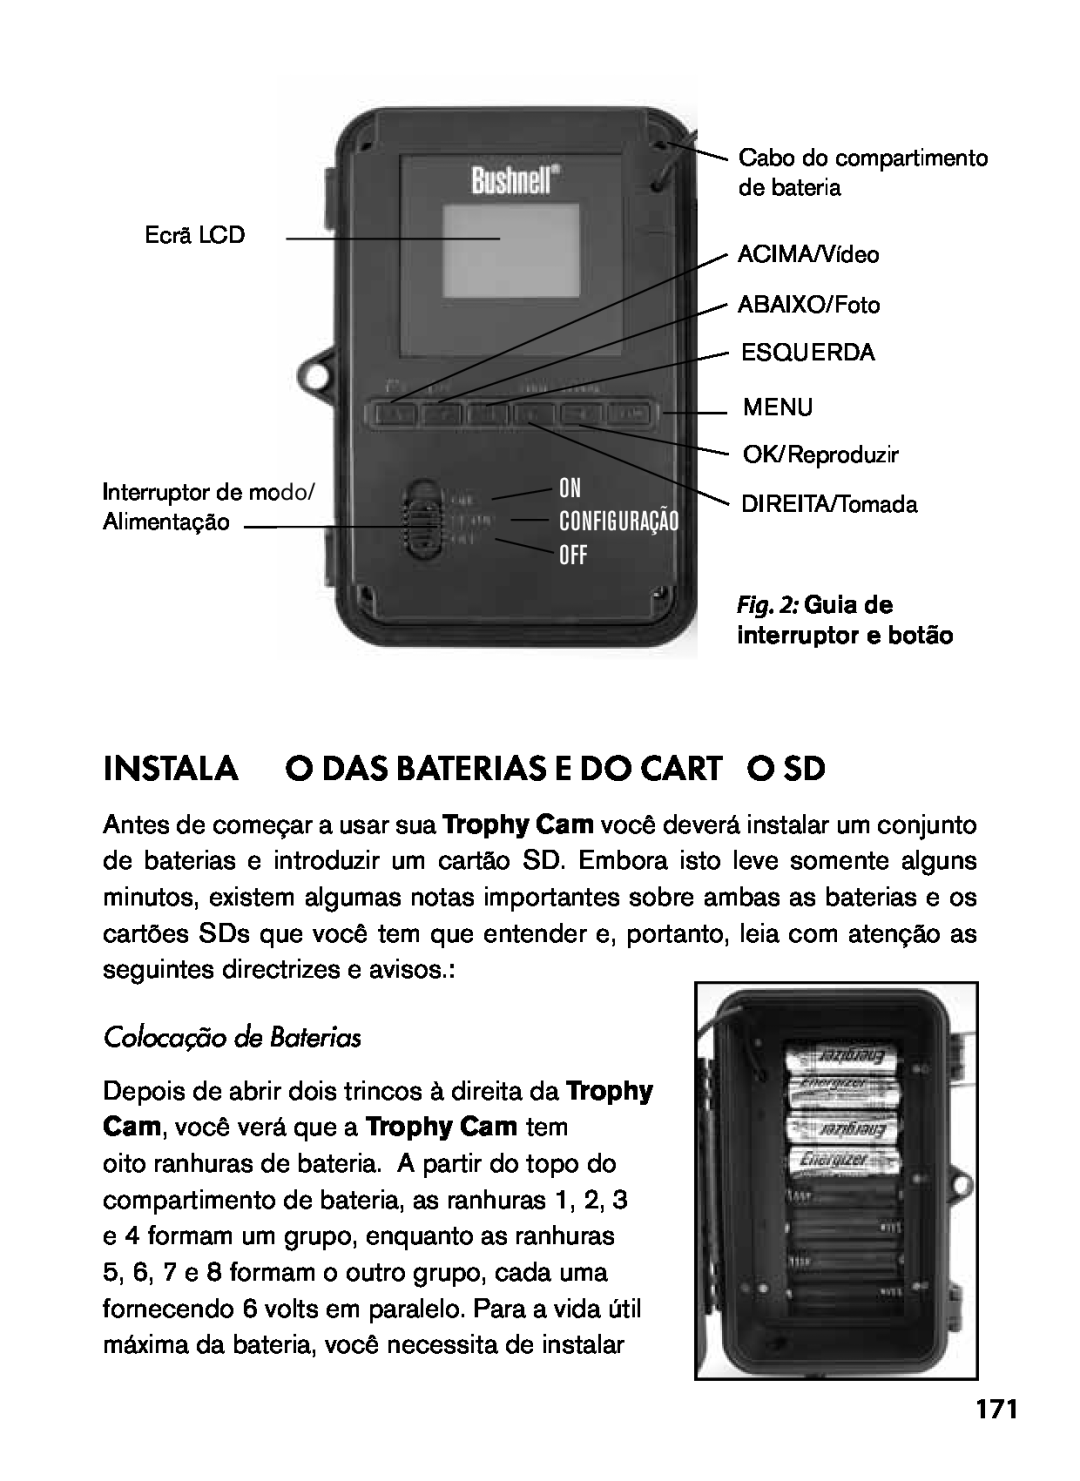 Bushnell 119455, 119445, 119435 instruction manual Instalação Das Baterias E Do Cartão Sd, Colocação de Baterias 